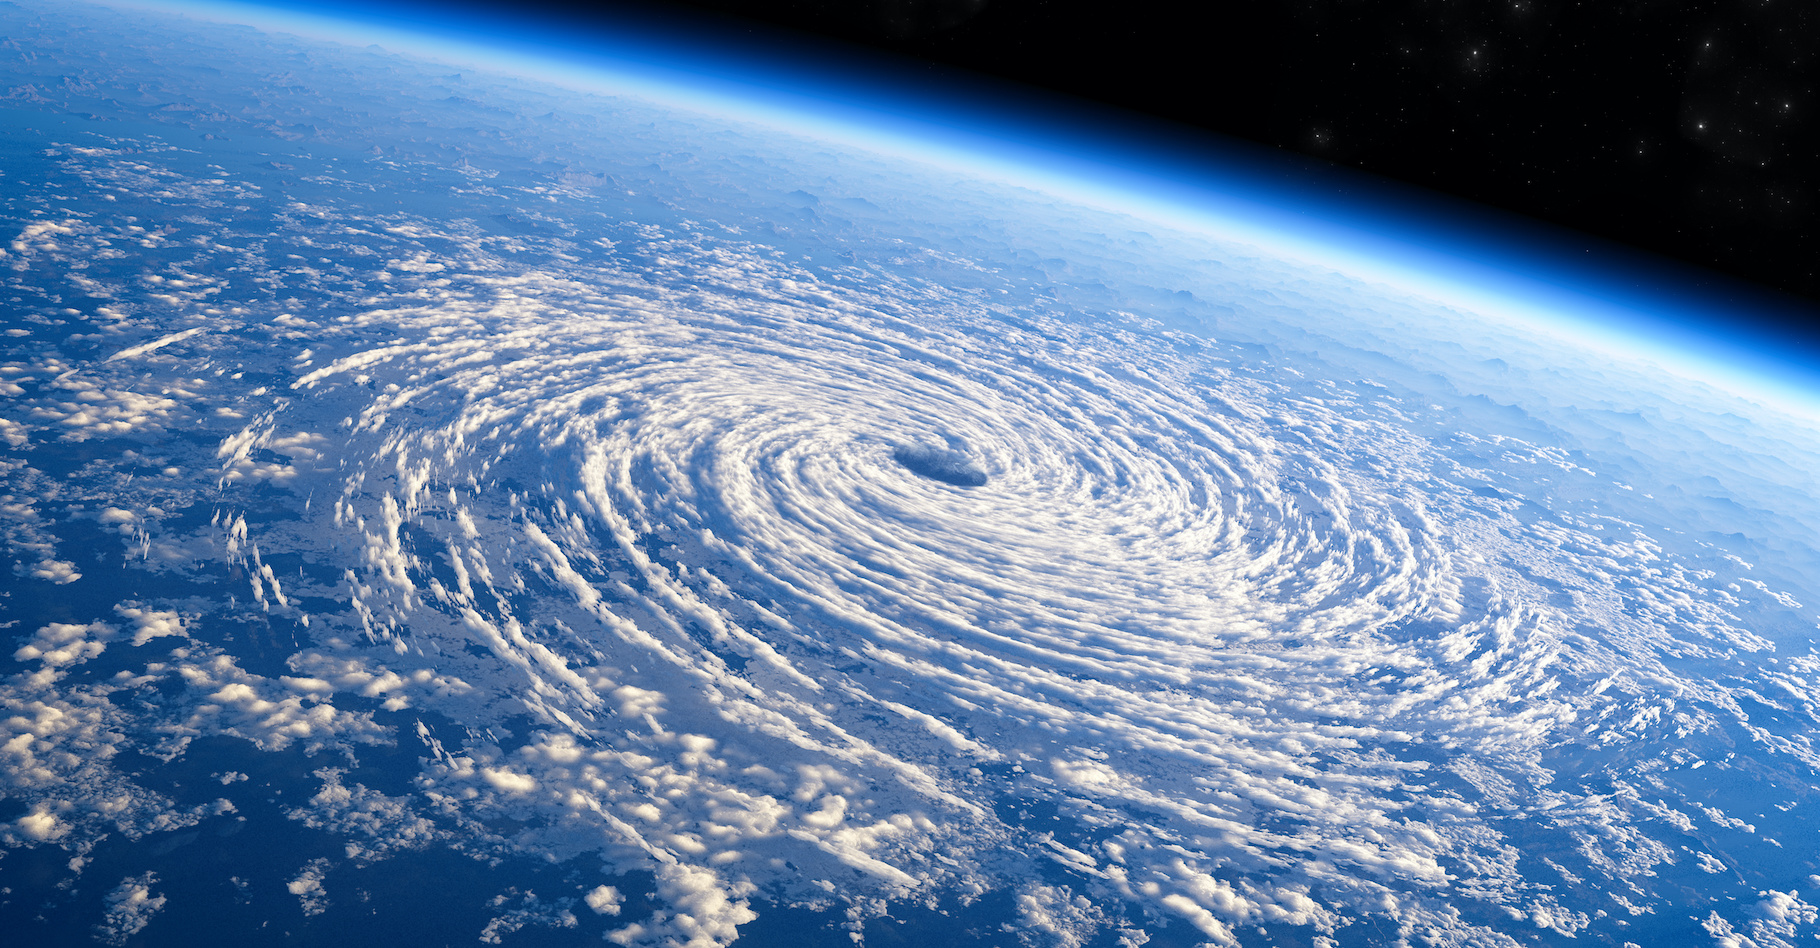 Avec le réchauffement climatique anthropique, des systèmes dépressionnaires de type cyclone tropical, ouragan ou typhon, pourraient se former à des latitudes bien plus élevées que celle qui les voient naître aujourd’hui. © Nabelys, Adobe Stock